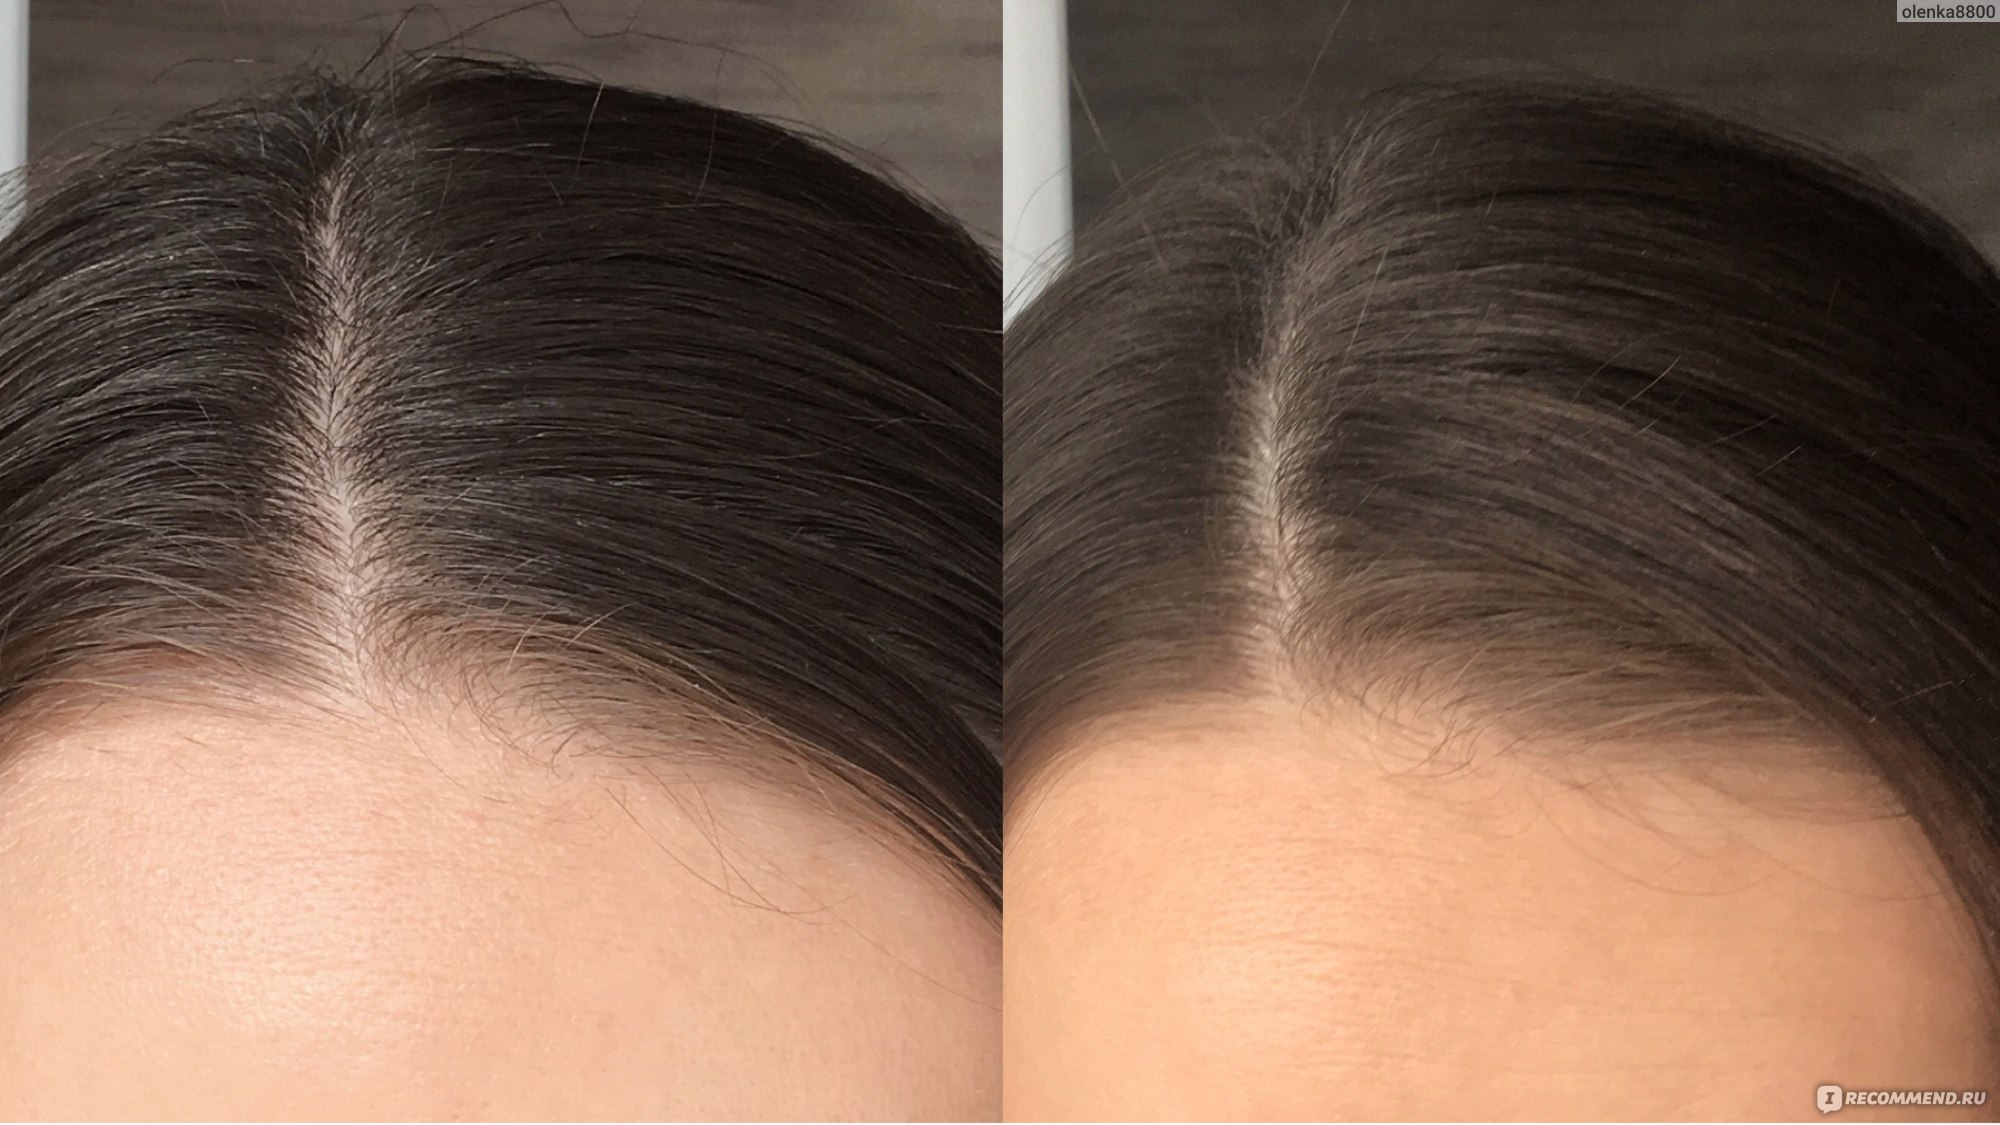 Волосы после сухого шампуня. Сухой шампунь для волос до и после. Жирные волосы до после. Сухой шампунь фото до и после.